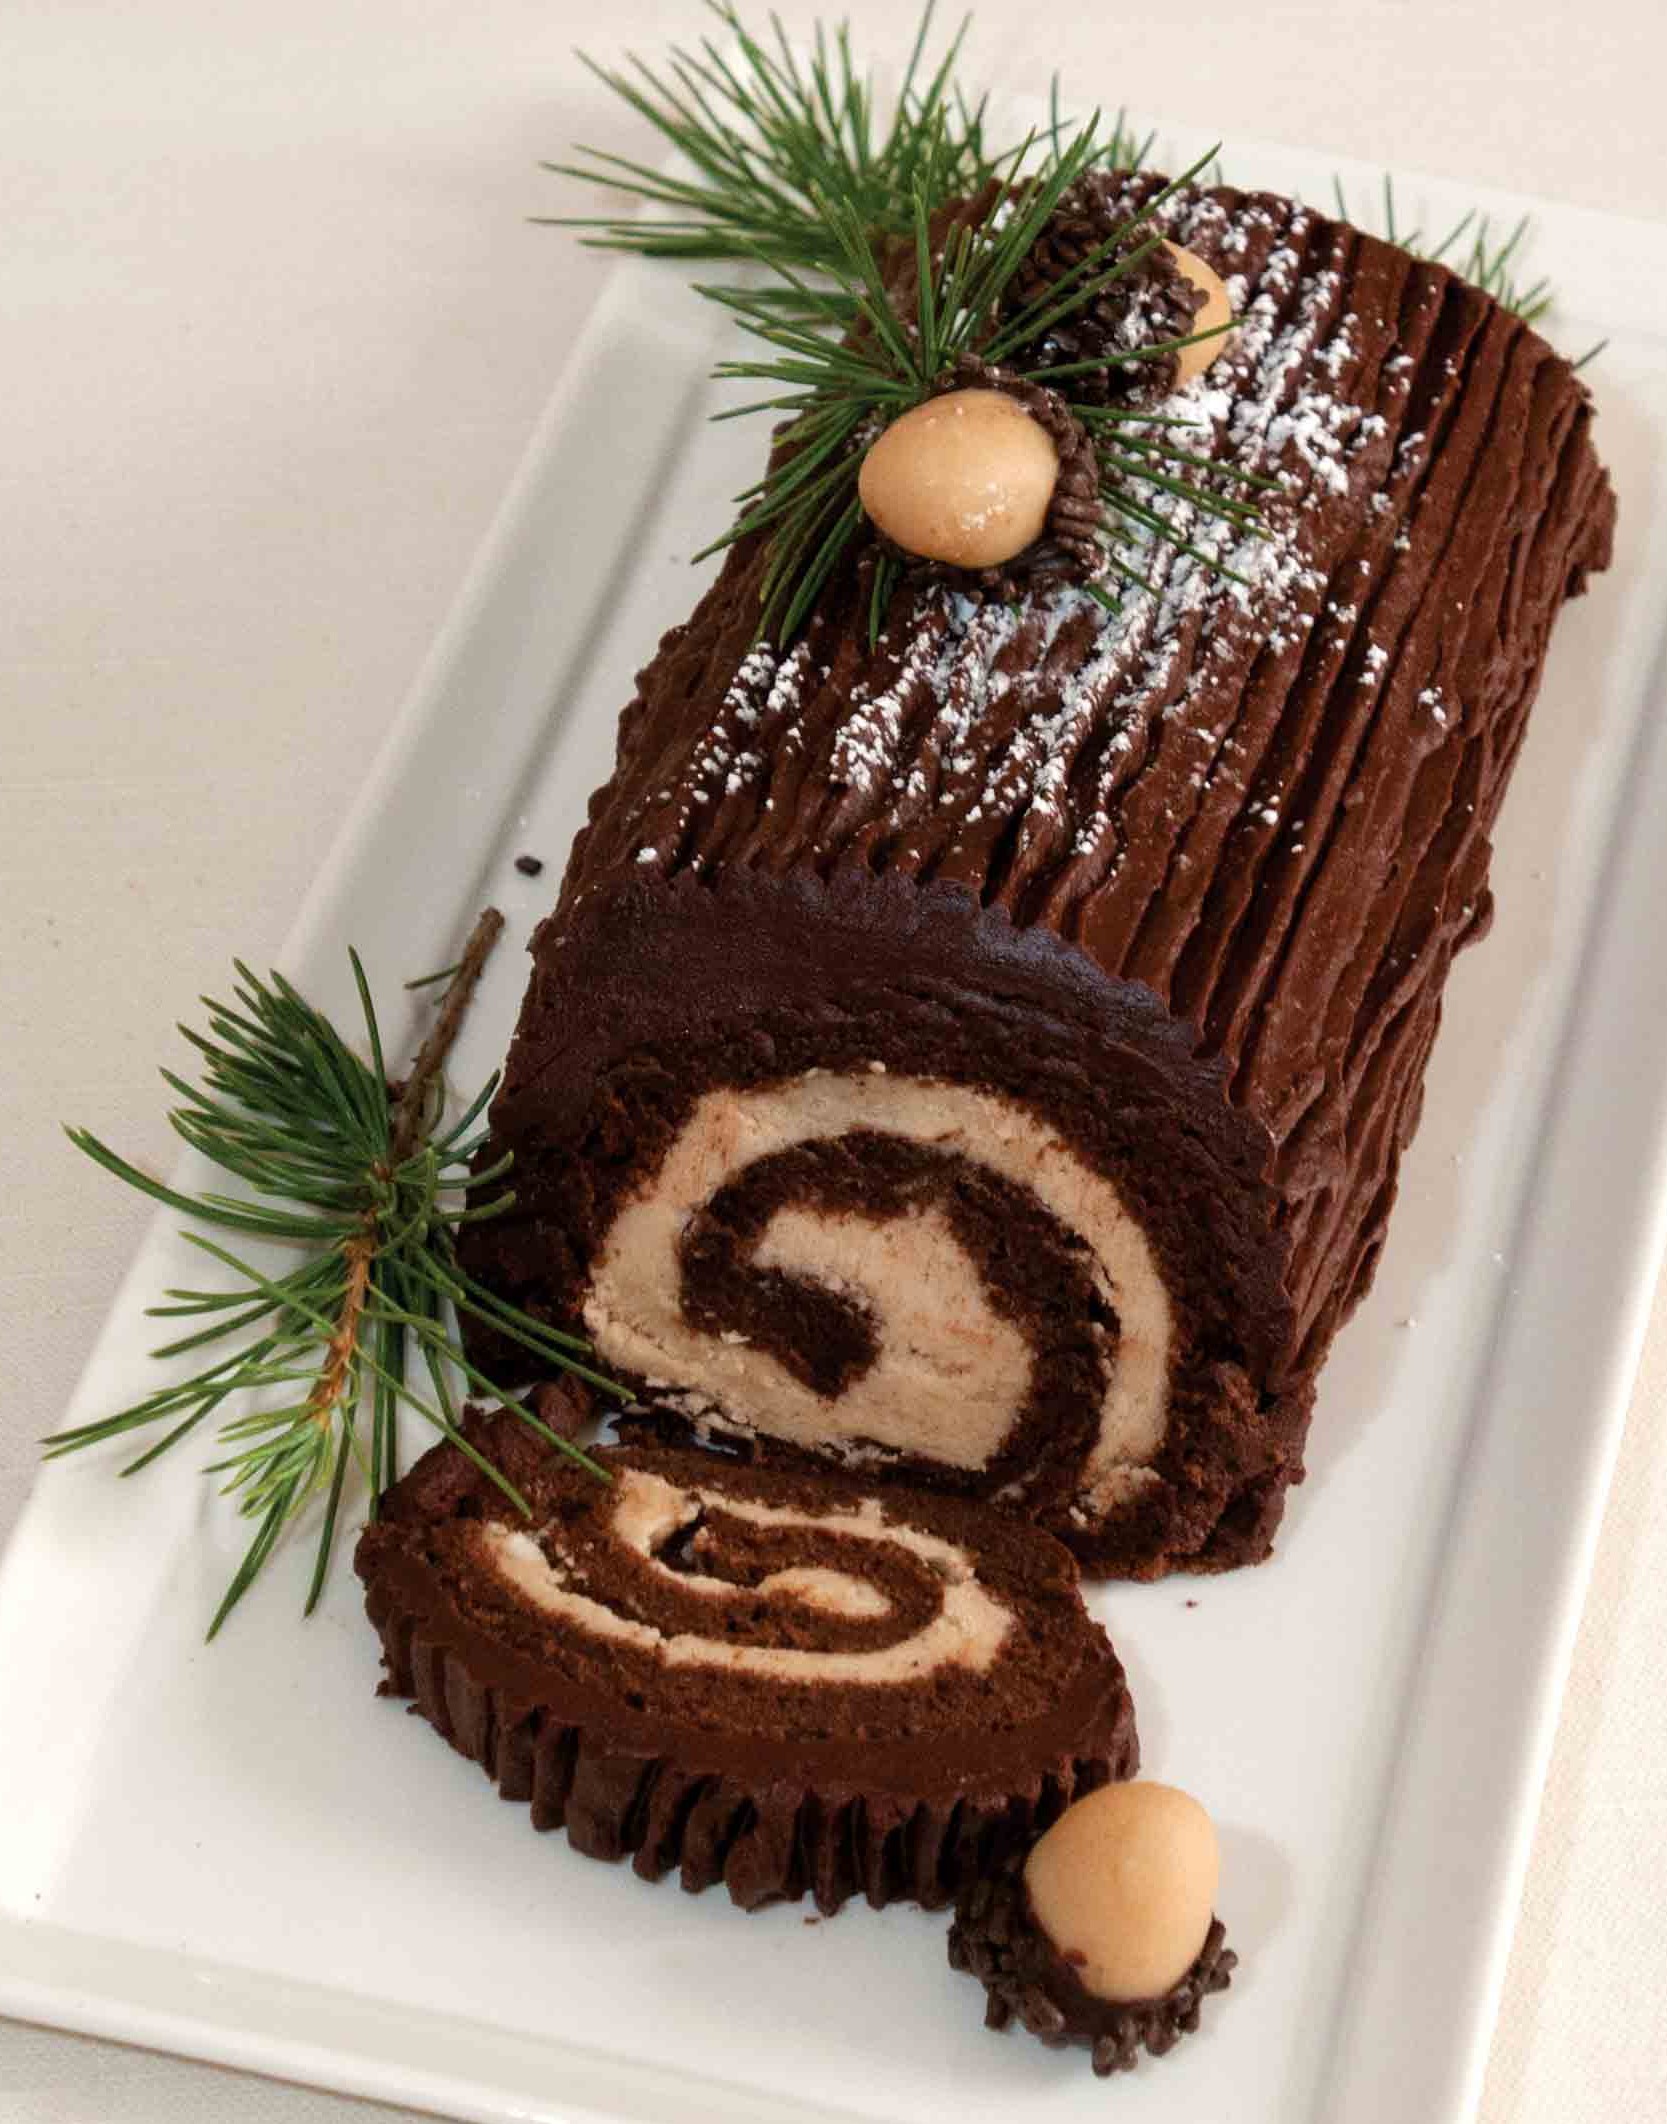 Buche de Noel (Yule Log Cake), A Delicious "Woody Pieces ...